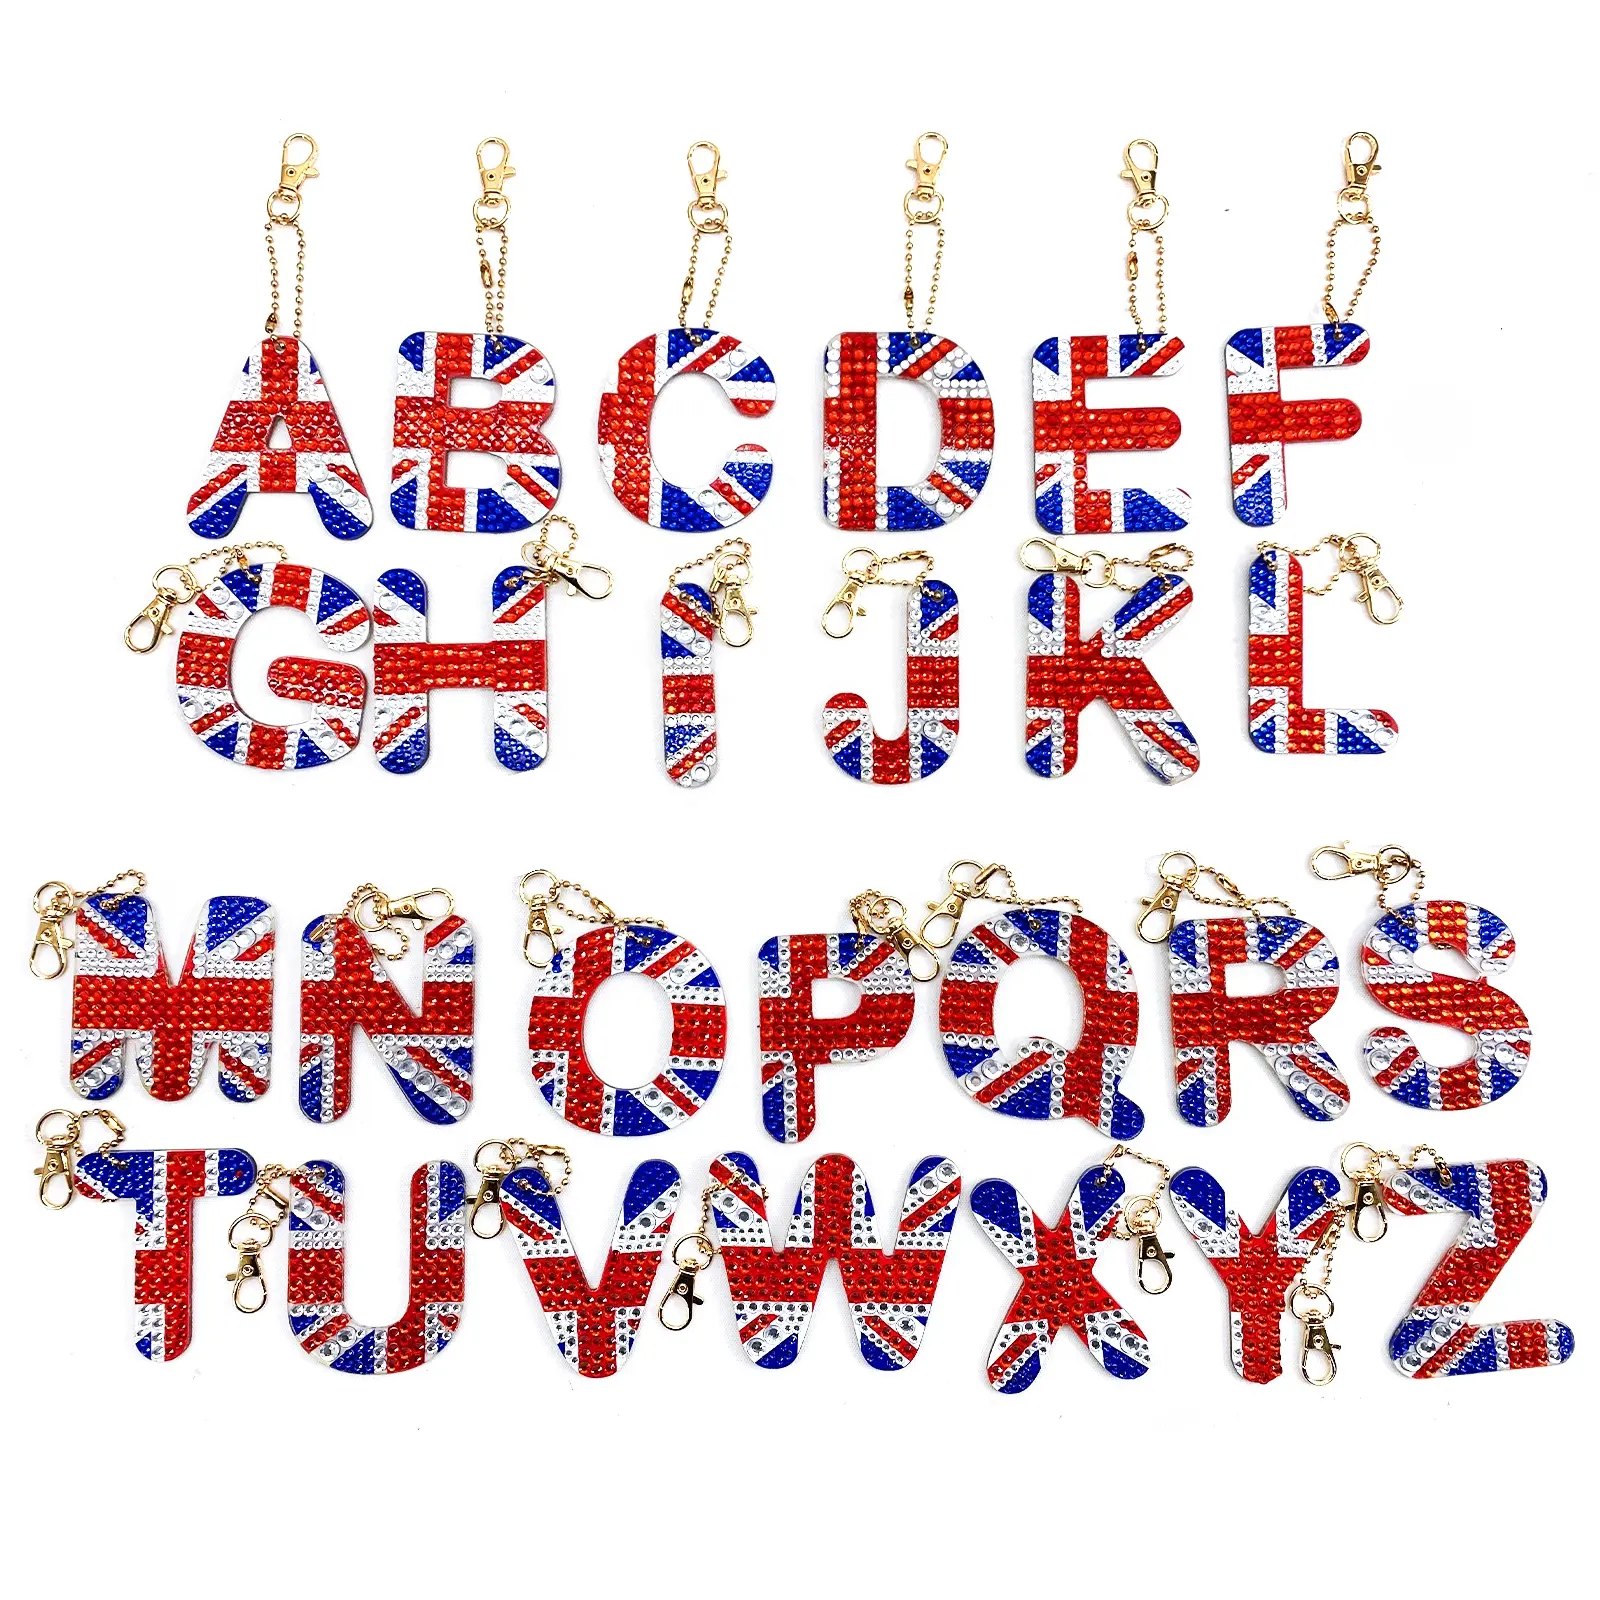 Alphabet mit UK Flag Muster Kristall Edelstein DIY Diamant Malerei Schlüssel bund Kits für Kinder und Erwachsene Farbe mit Diamanten nach Zahlen